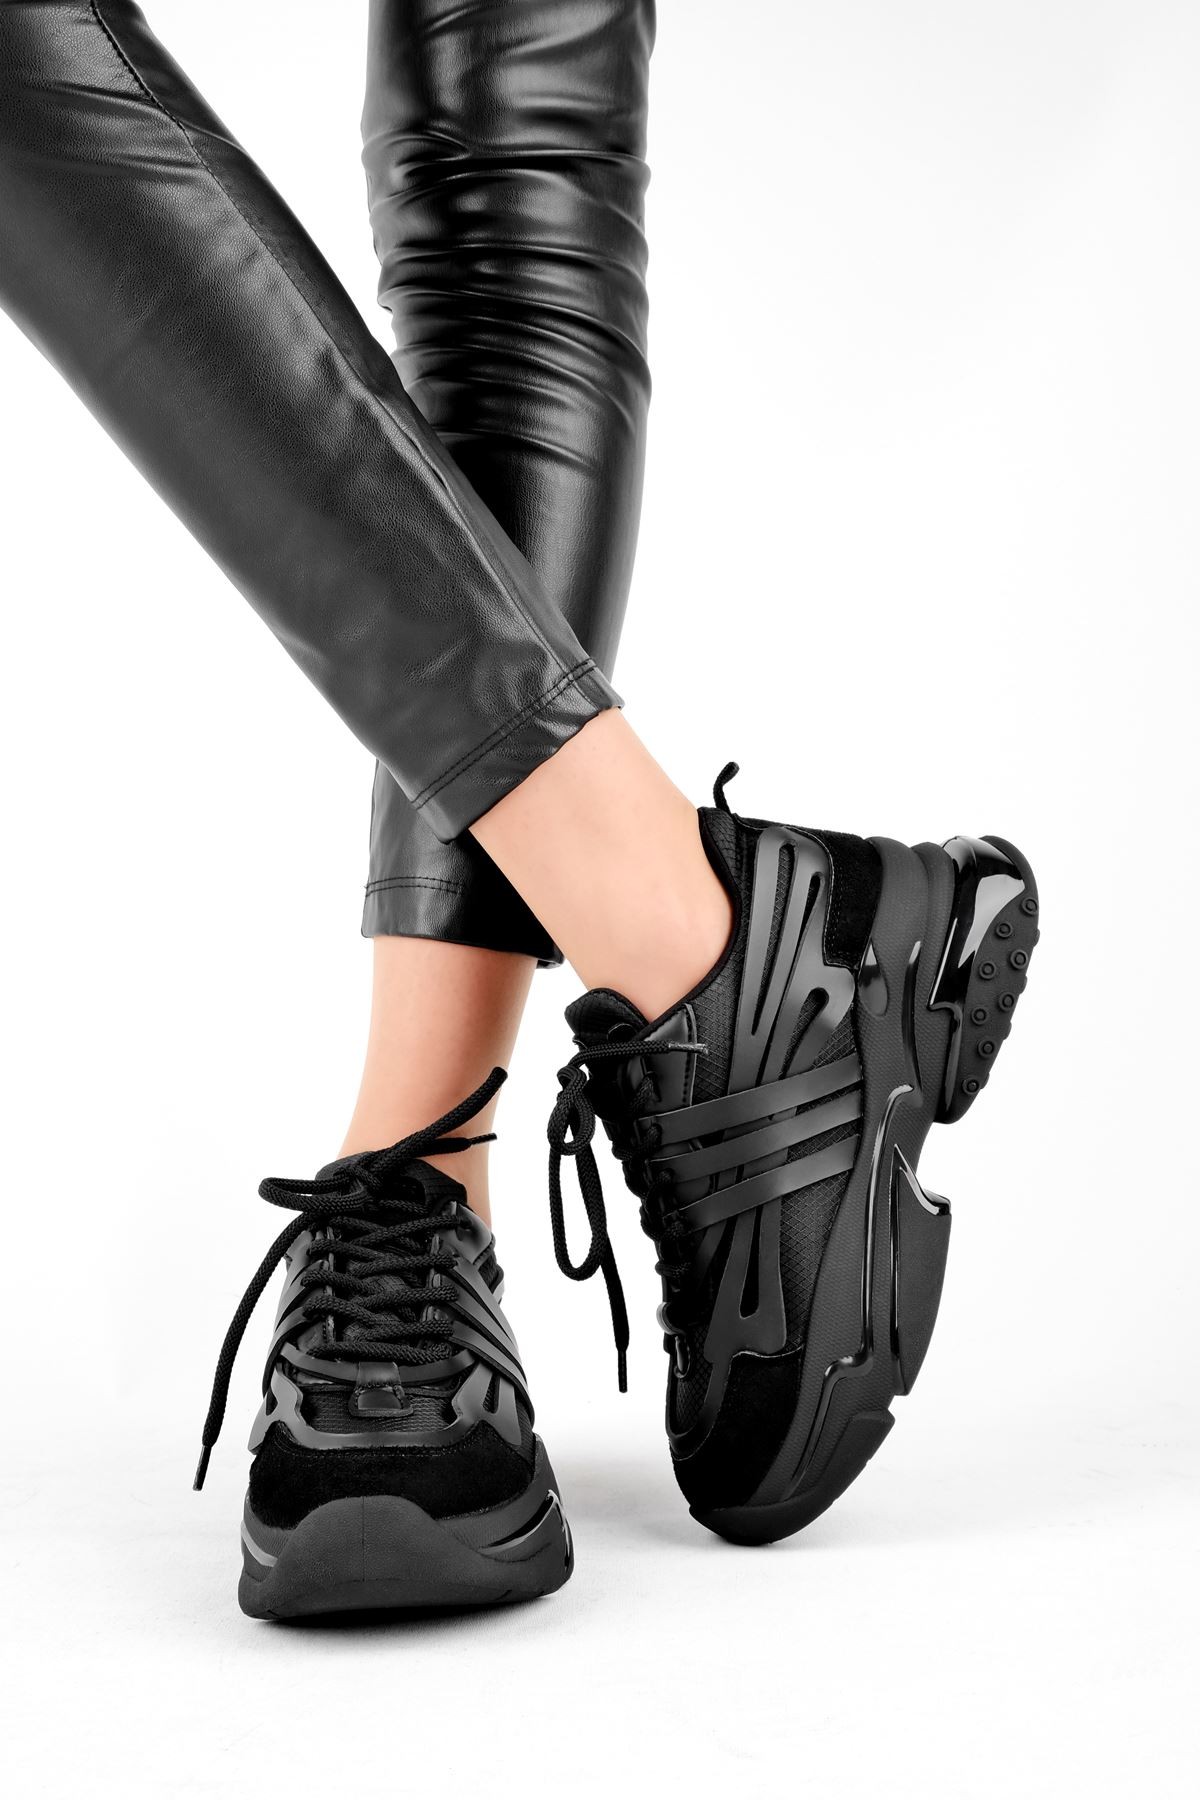 Betty Yüksek Taban Kadın Spor Ayakkabı B3010 - Siyah